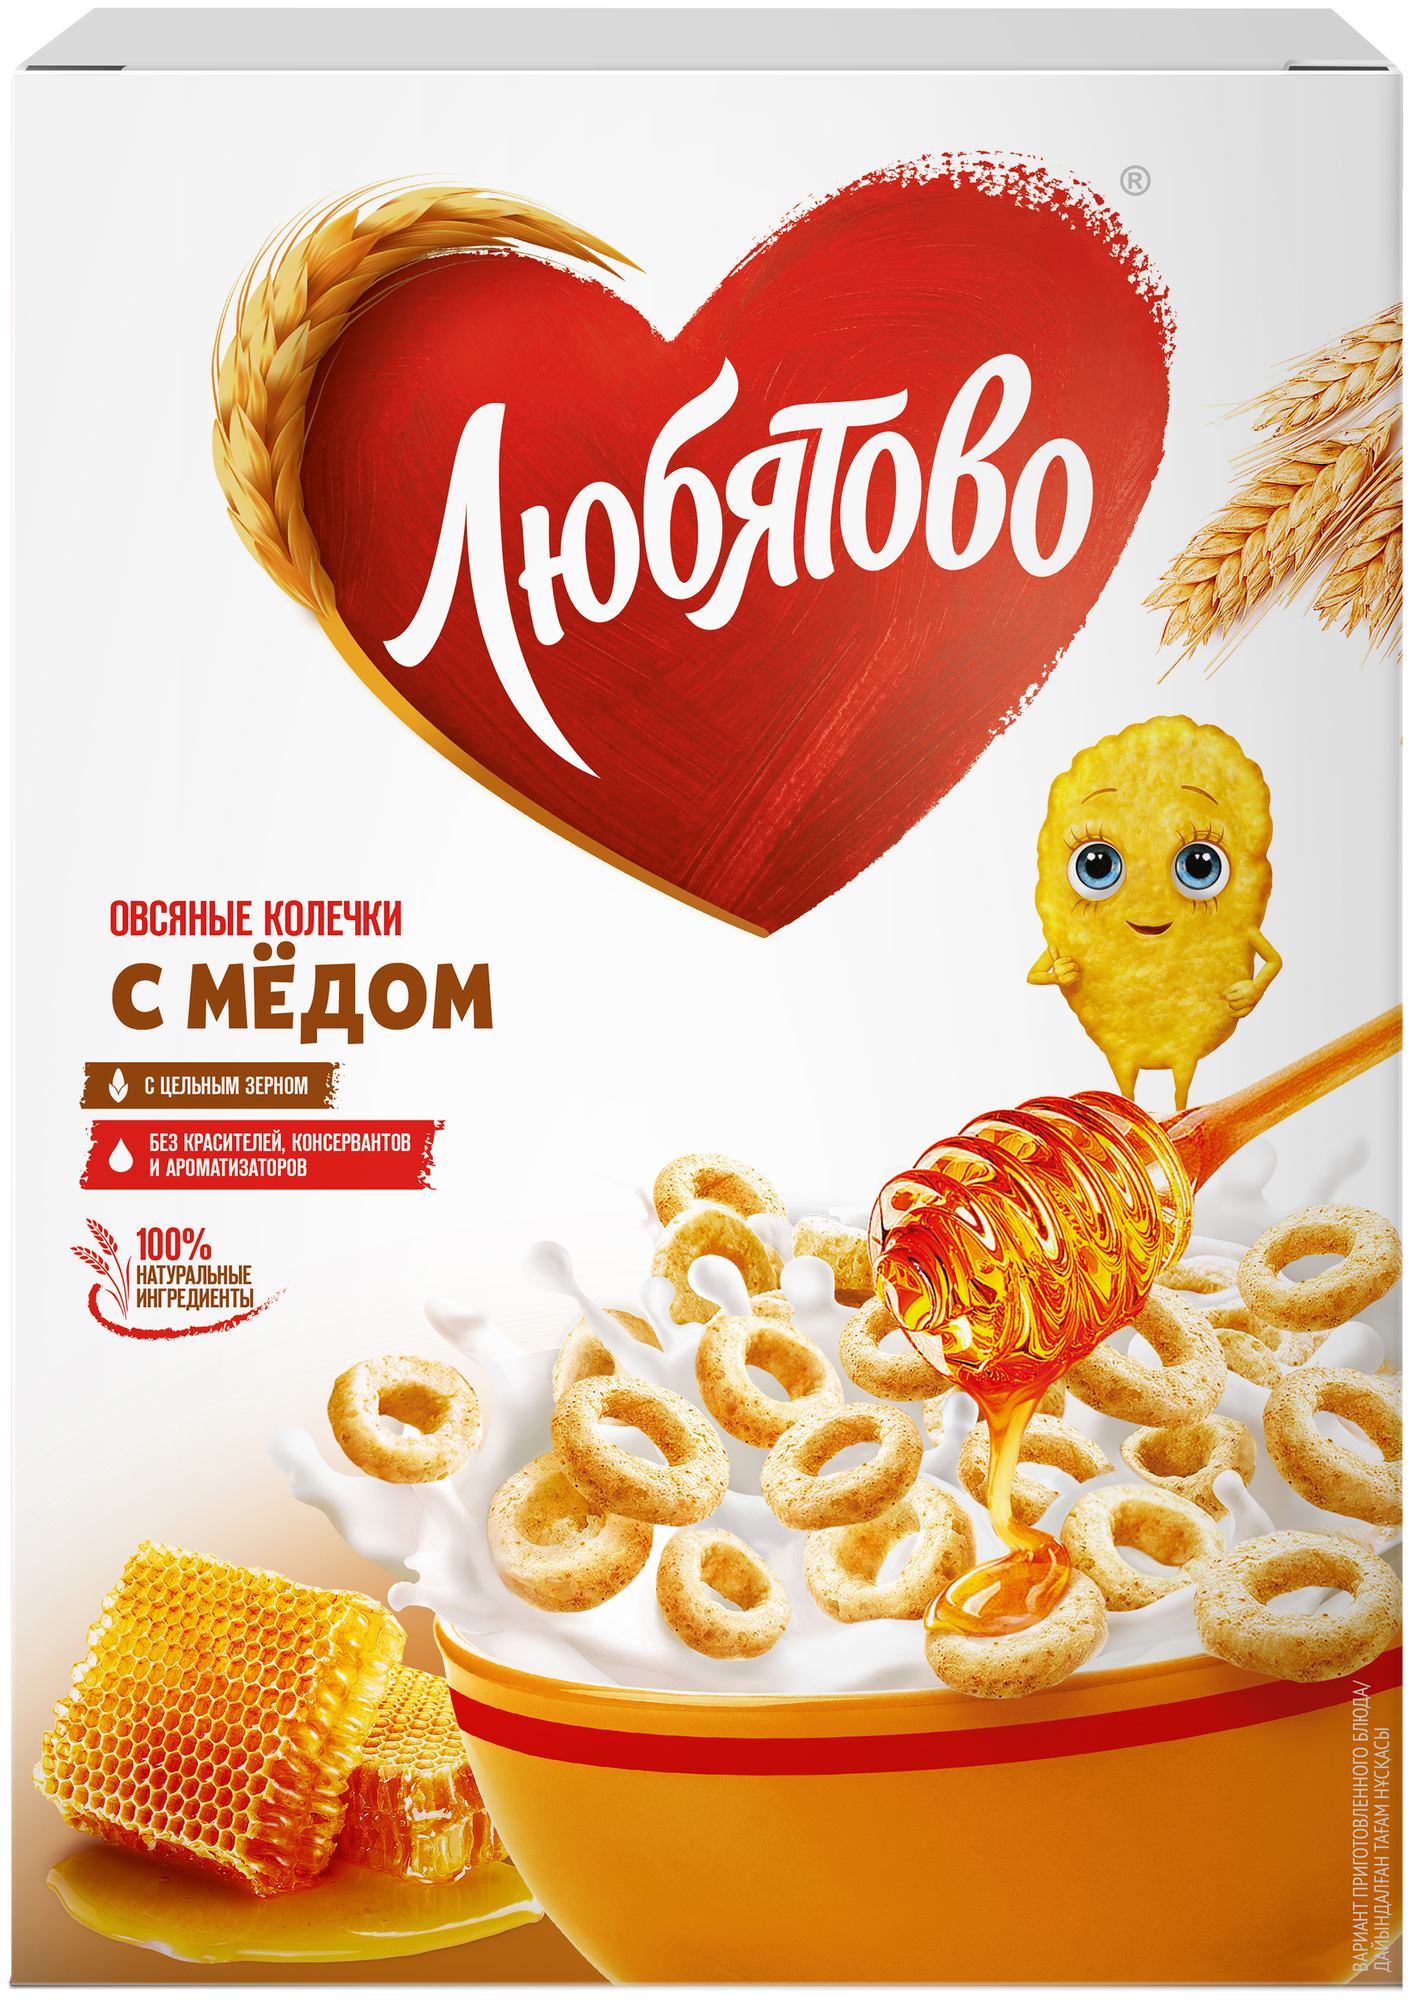 Любятово "Овсяные колечки с медом" готовый завтрак, 200 г